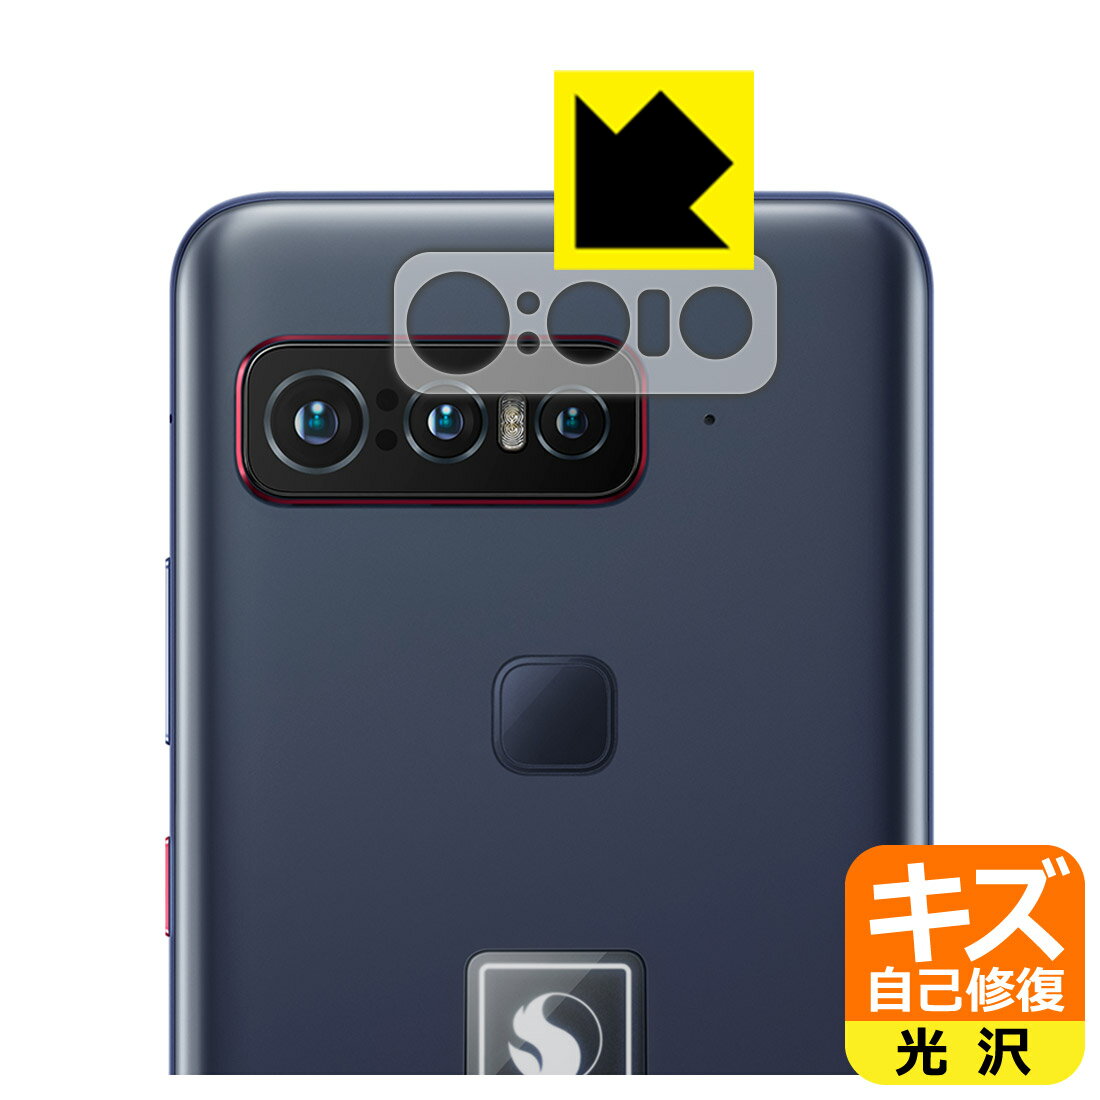 キズ自己修復保護フィルム ASUS Smartphone for Snapdragon Insiders (ZS675KW-BL512R16) レンズ周辺部用 日本製 自社製造直販